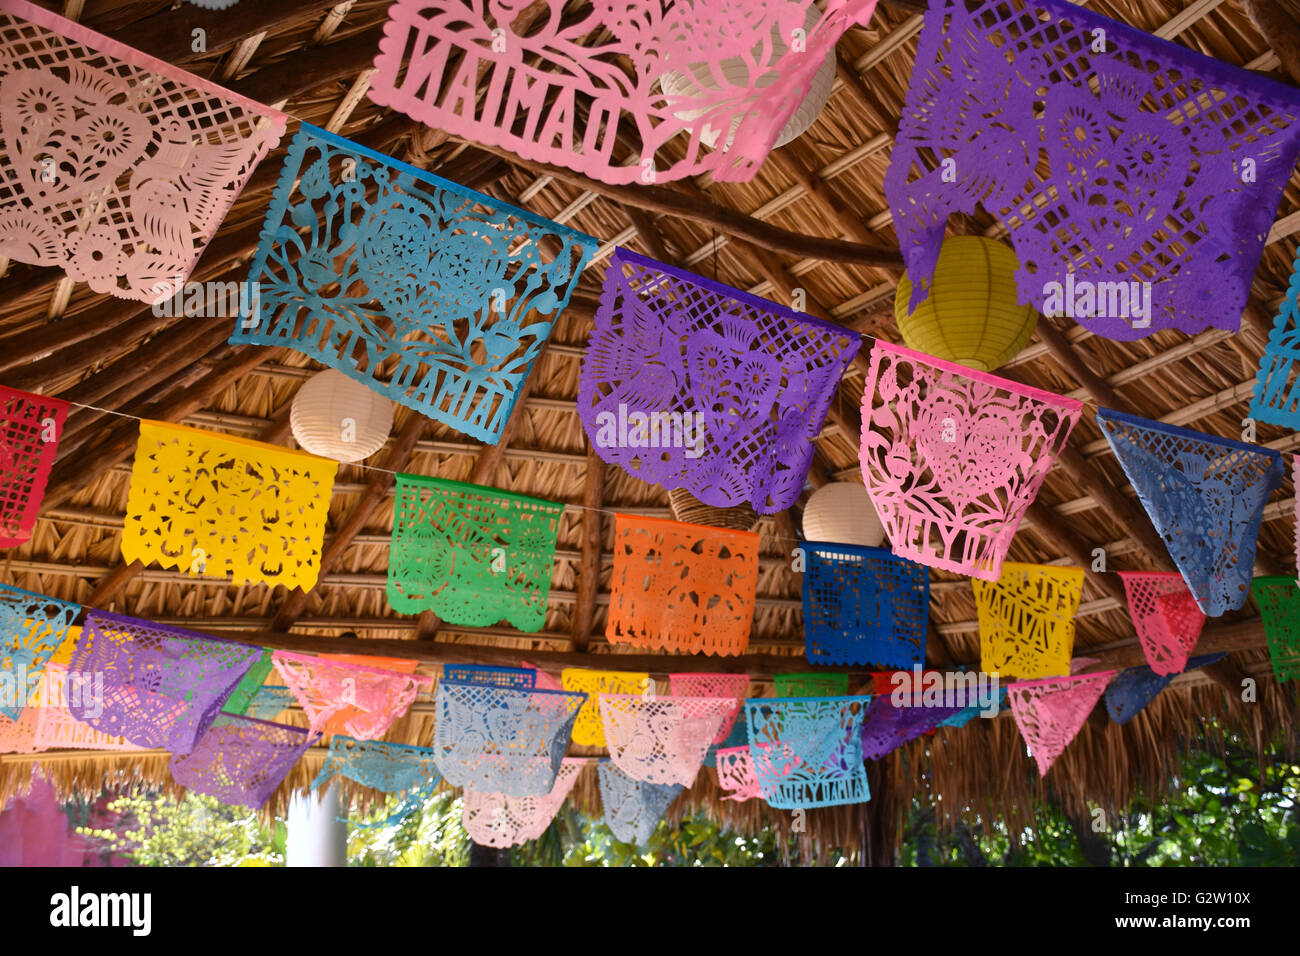 Decoraciones mexicanas fotografías e imágenes de alta resolución - Alamy